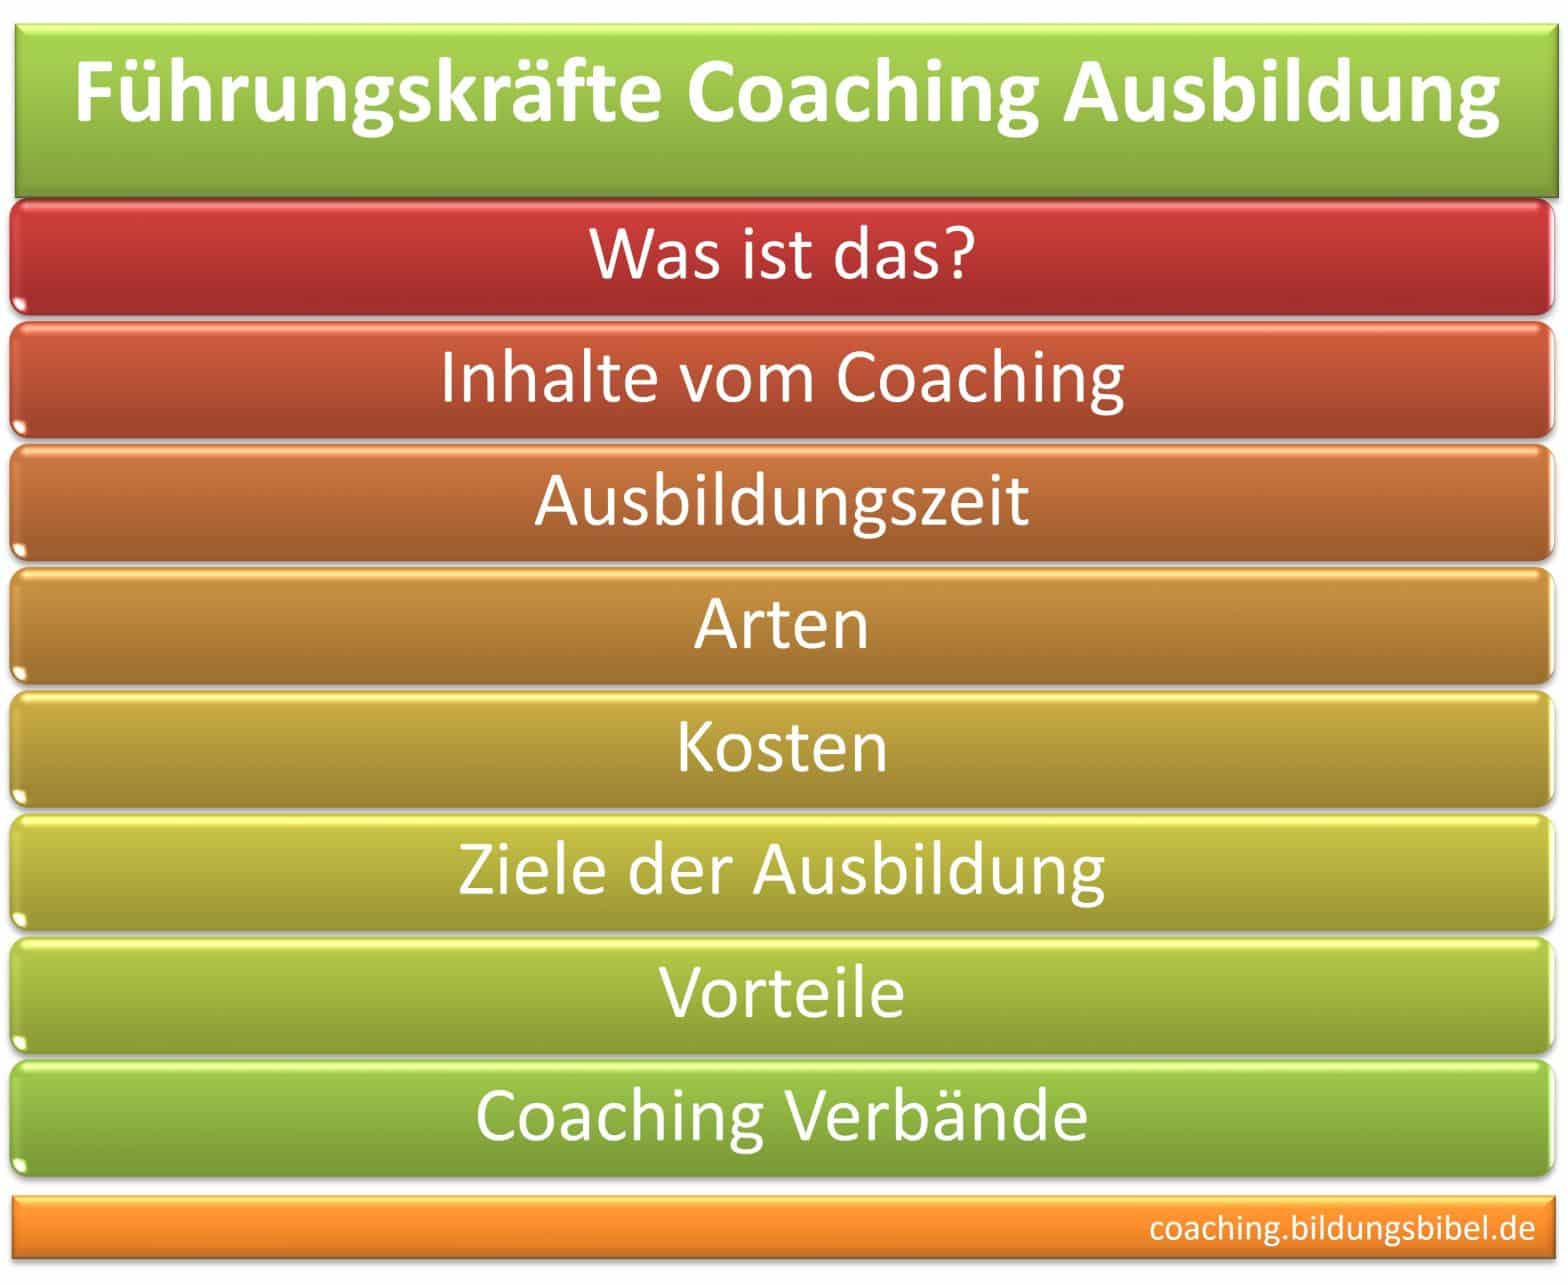 Führungskräfte Coaching Ausbildung, Infos zu Kosten, Inhalt, Dauer, Ziele, Vorteile, Einzelcoaching, Gruppencoaching, Studiengang Coaching.